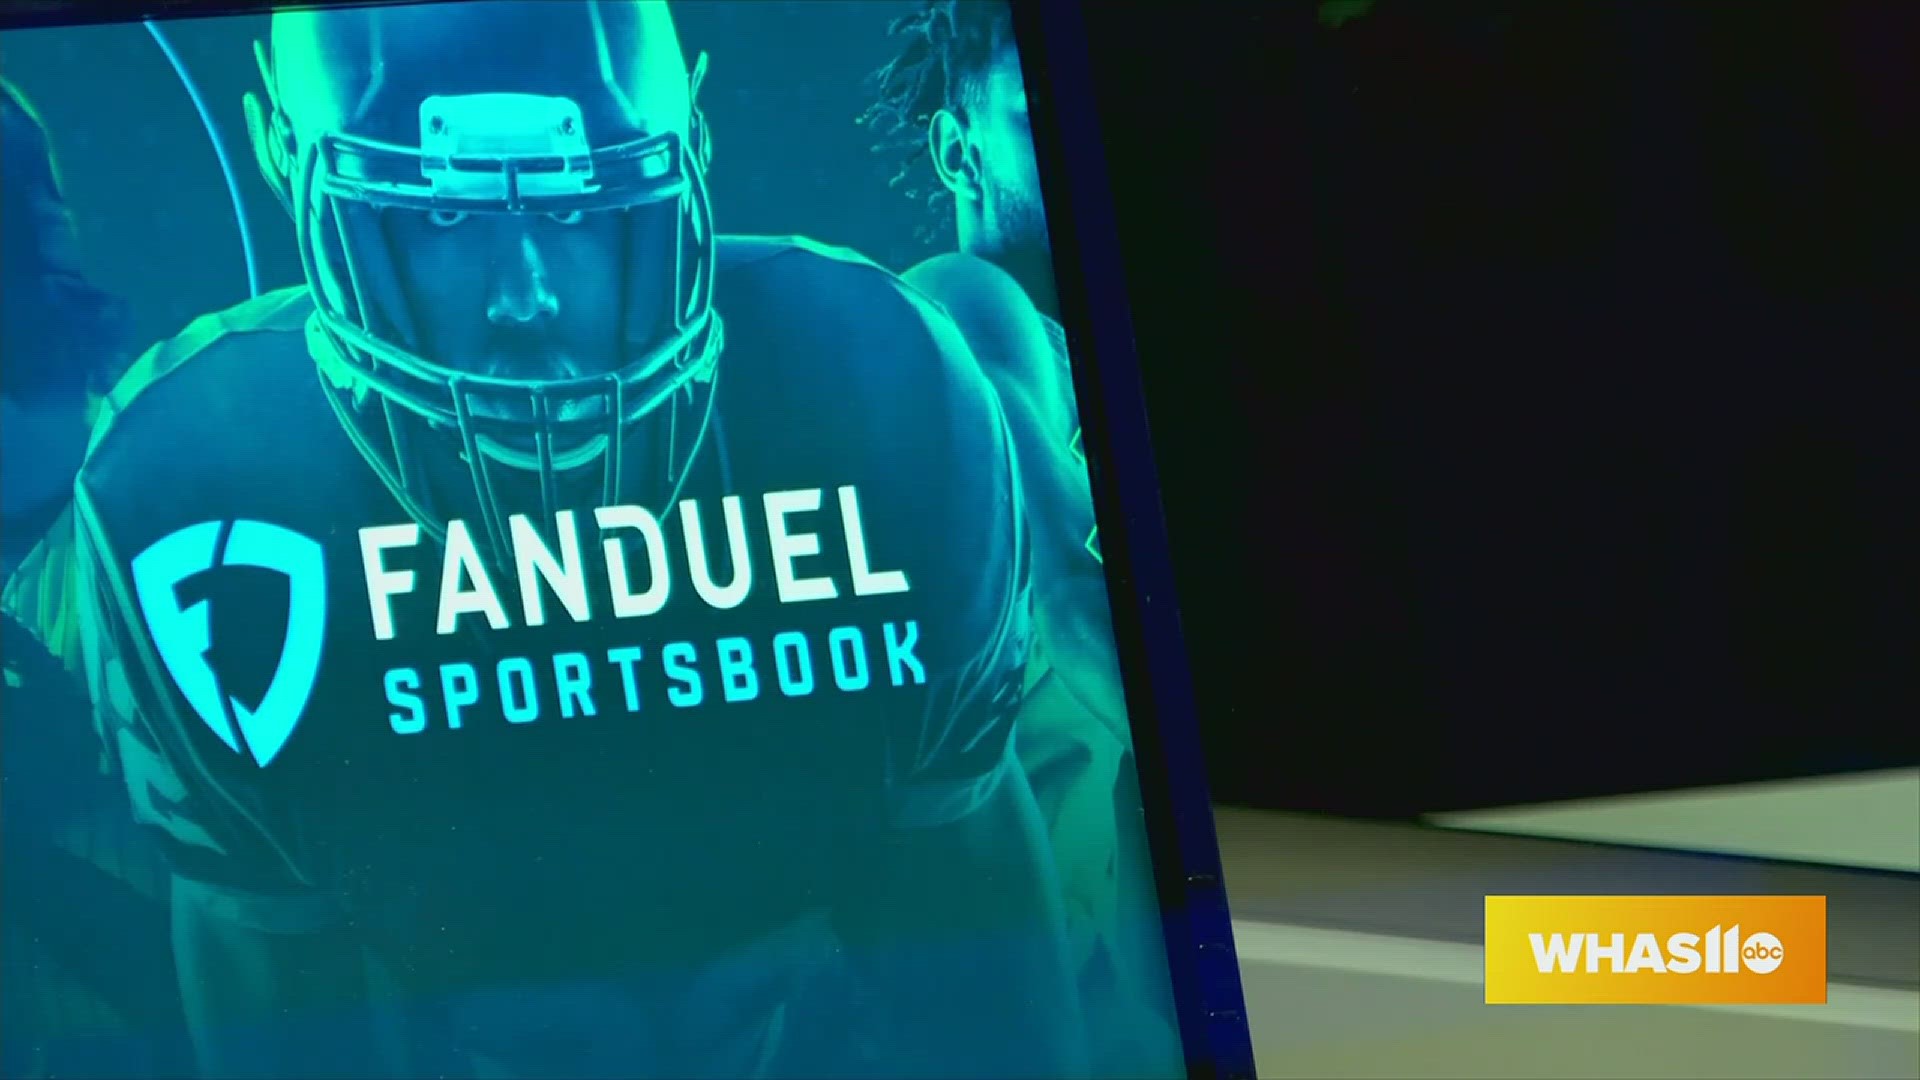 FanDuel Sportsbook on X: We're on to Week 2 